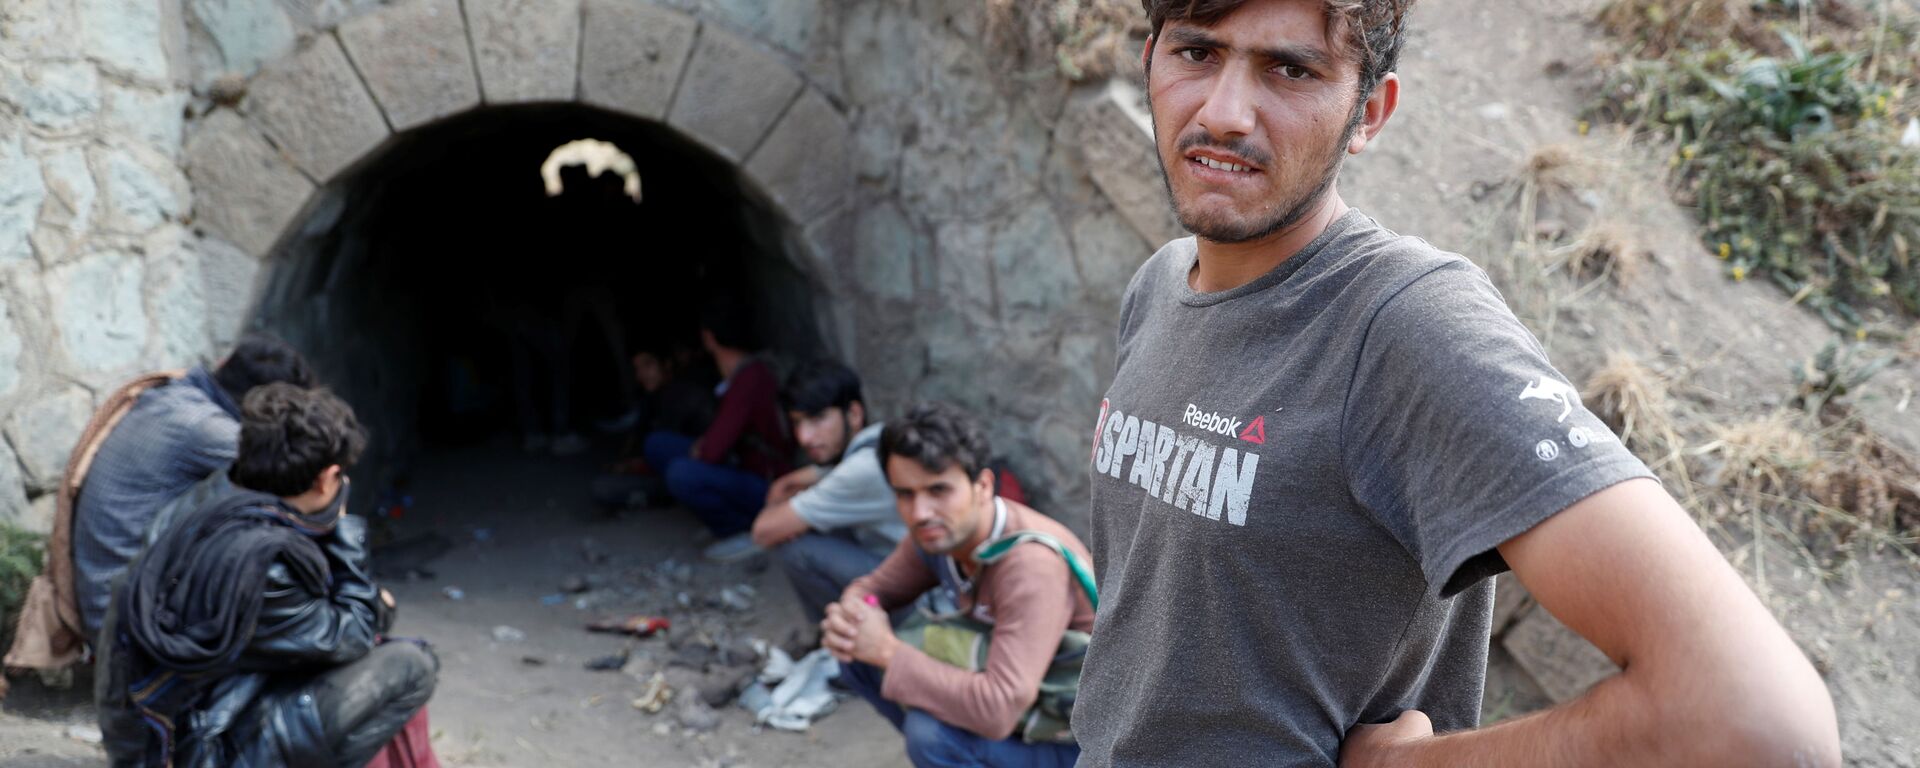 Афганские мигранты прячутся от сил безопасности в туннеле под железнодорожными путями после незаконного перехода в Турцию из Ирана - Sputnik Таджикистан, 1920, 19.10.2021